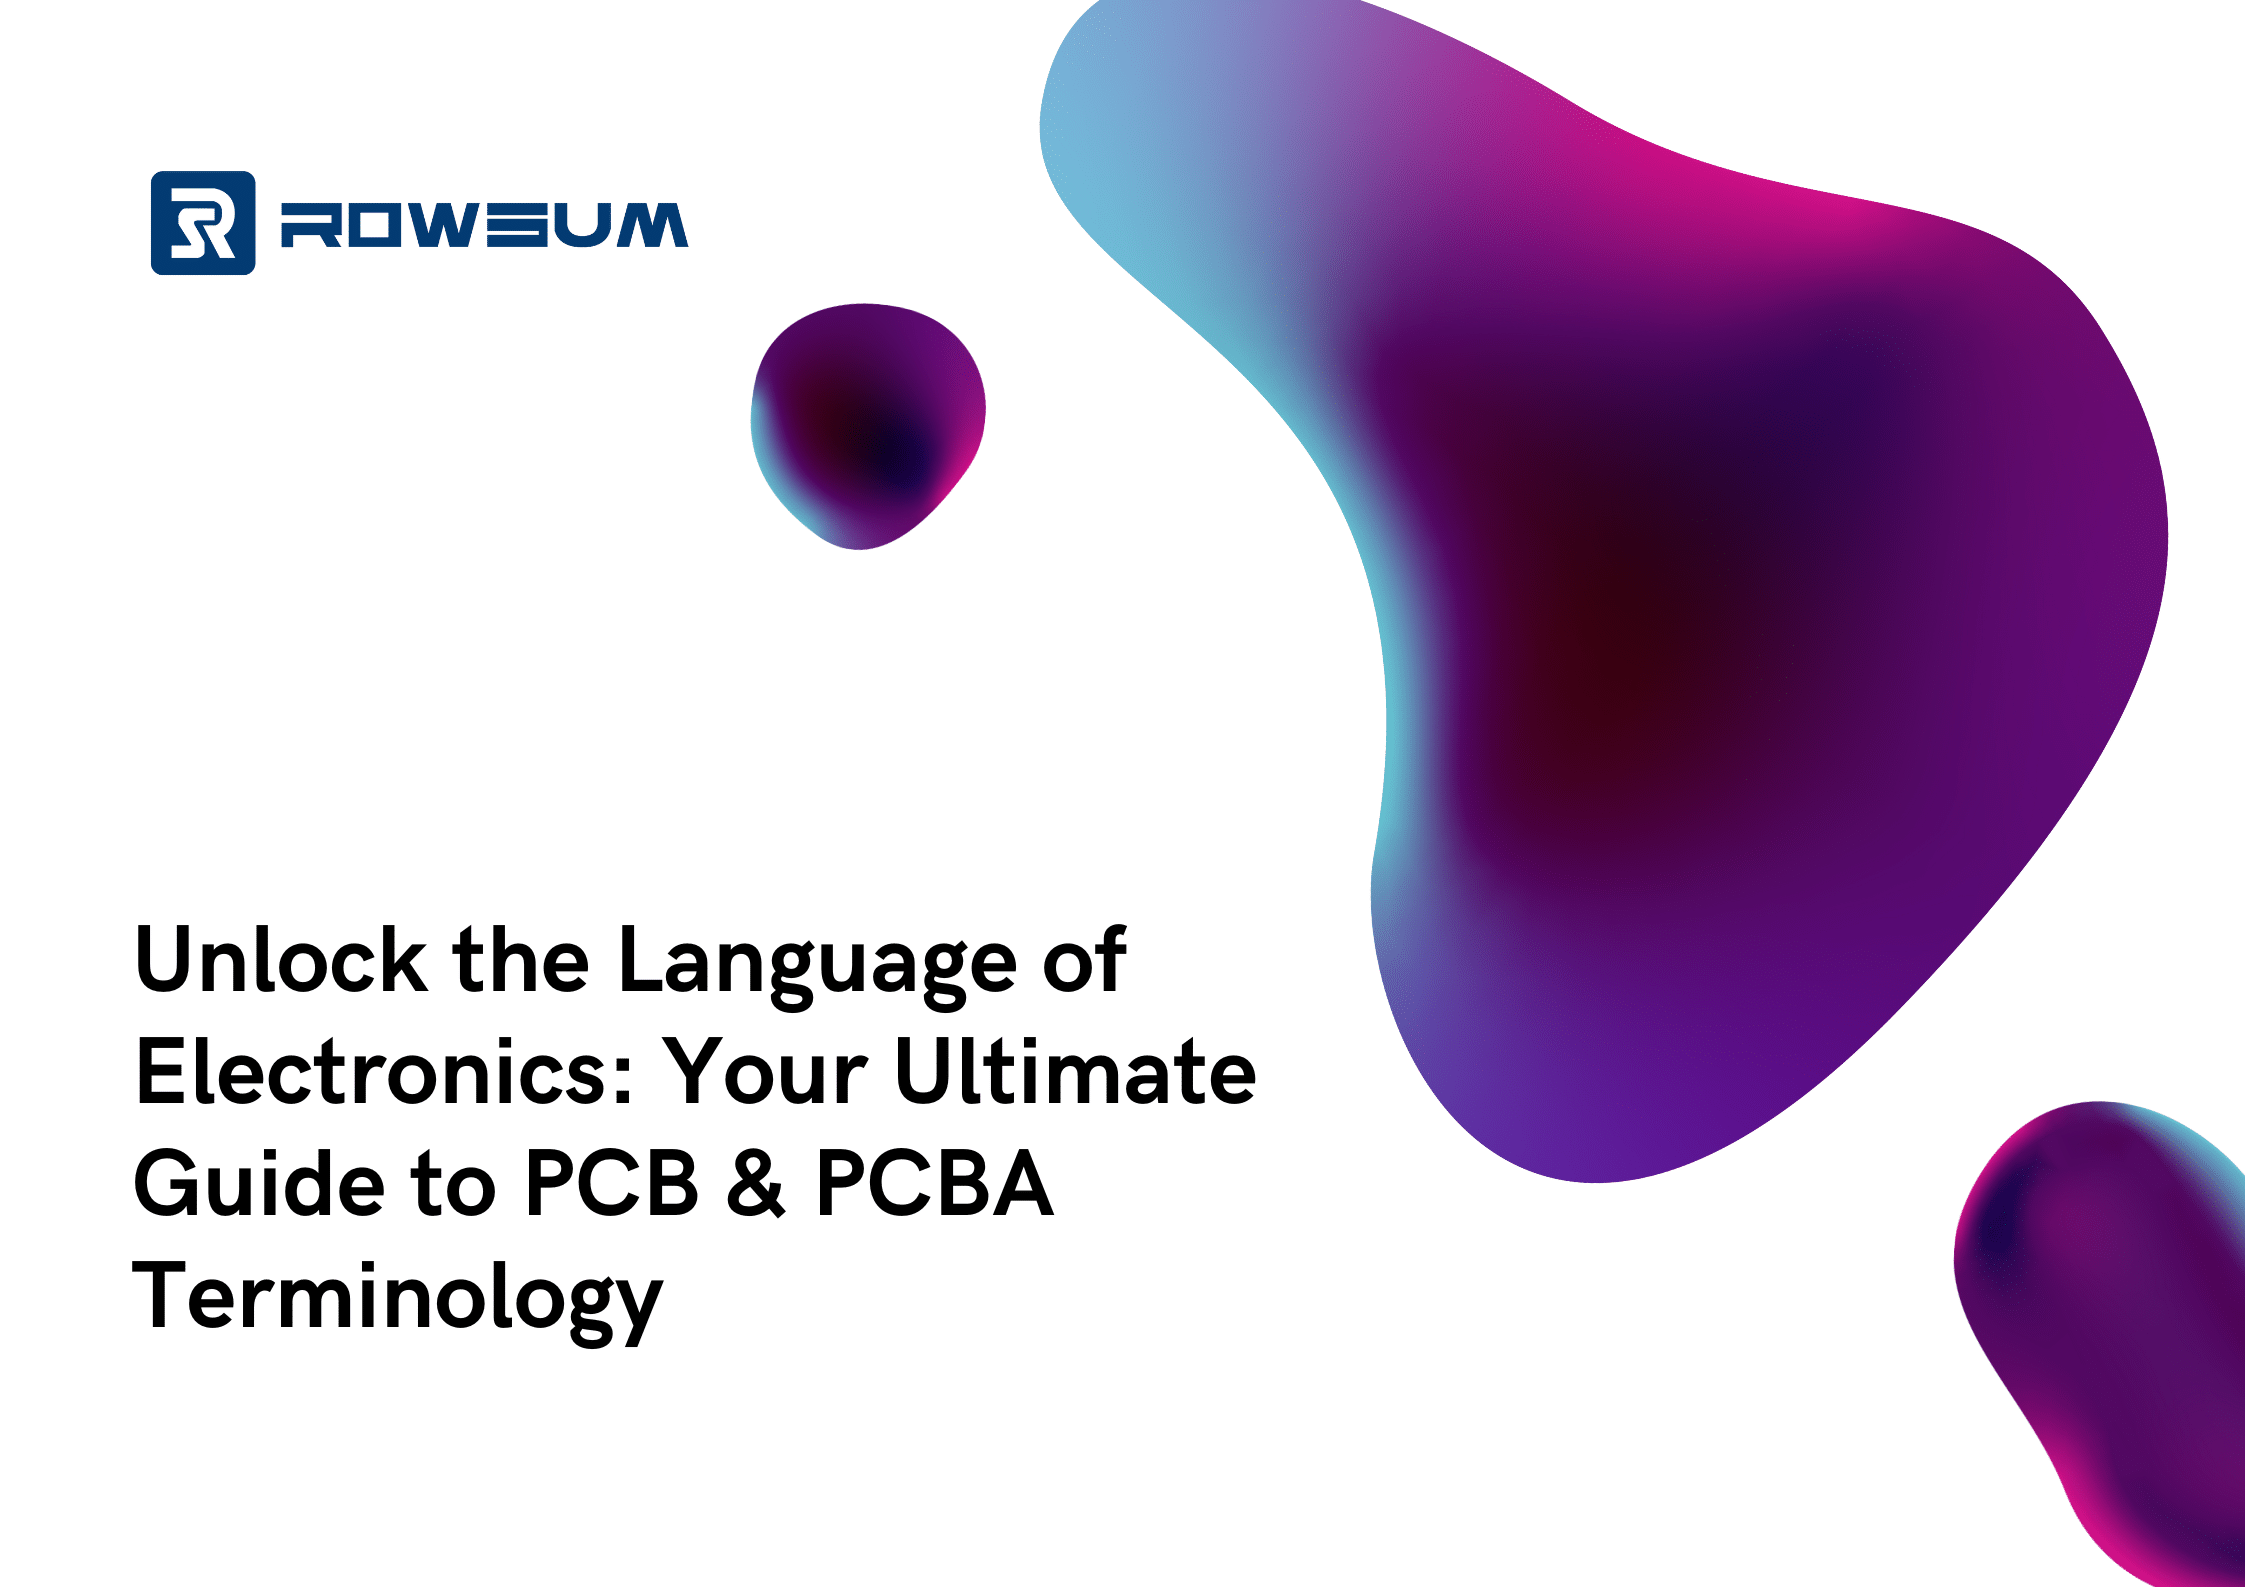 desbloqueie a linguagem da eletrônica, seu guia definitivo para a terminologia PCB e PCBA